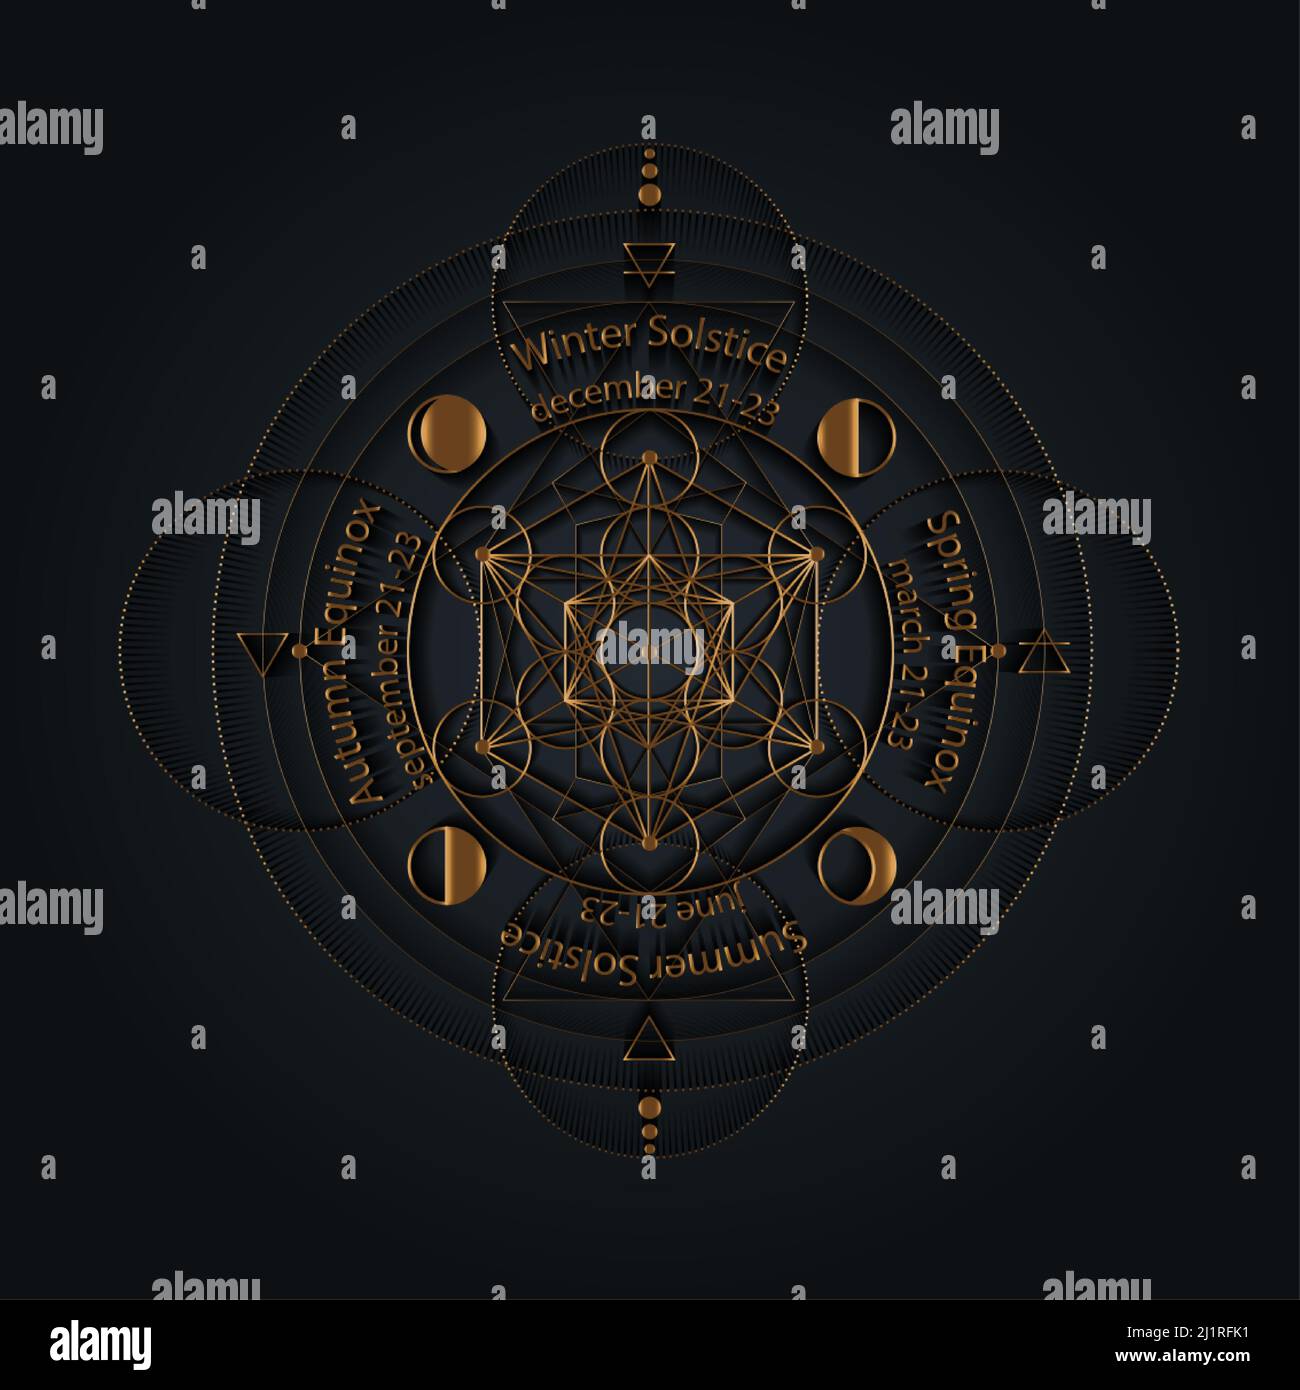 cerchio di solstice ed equinox stilizzato come disegno geometrico lineare con linee sottili dorate su sfondo nero con date e nomi, quattro elementi, aria, Illustrazione Vettoriale